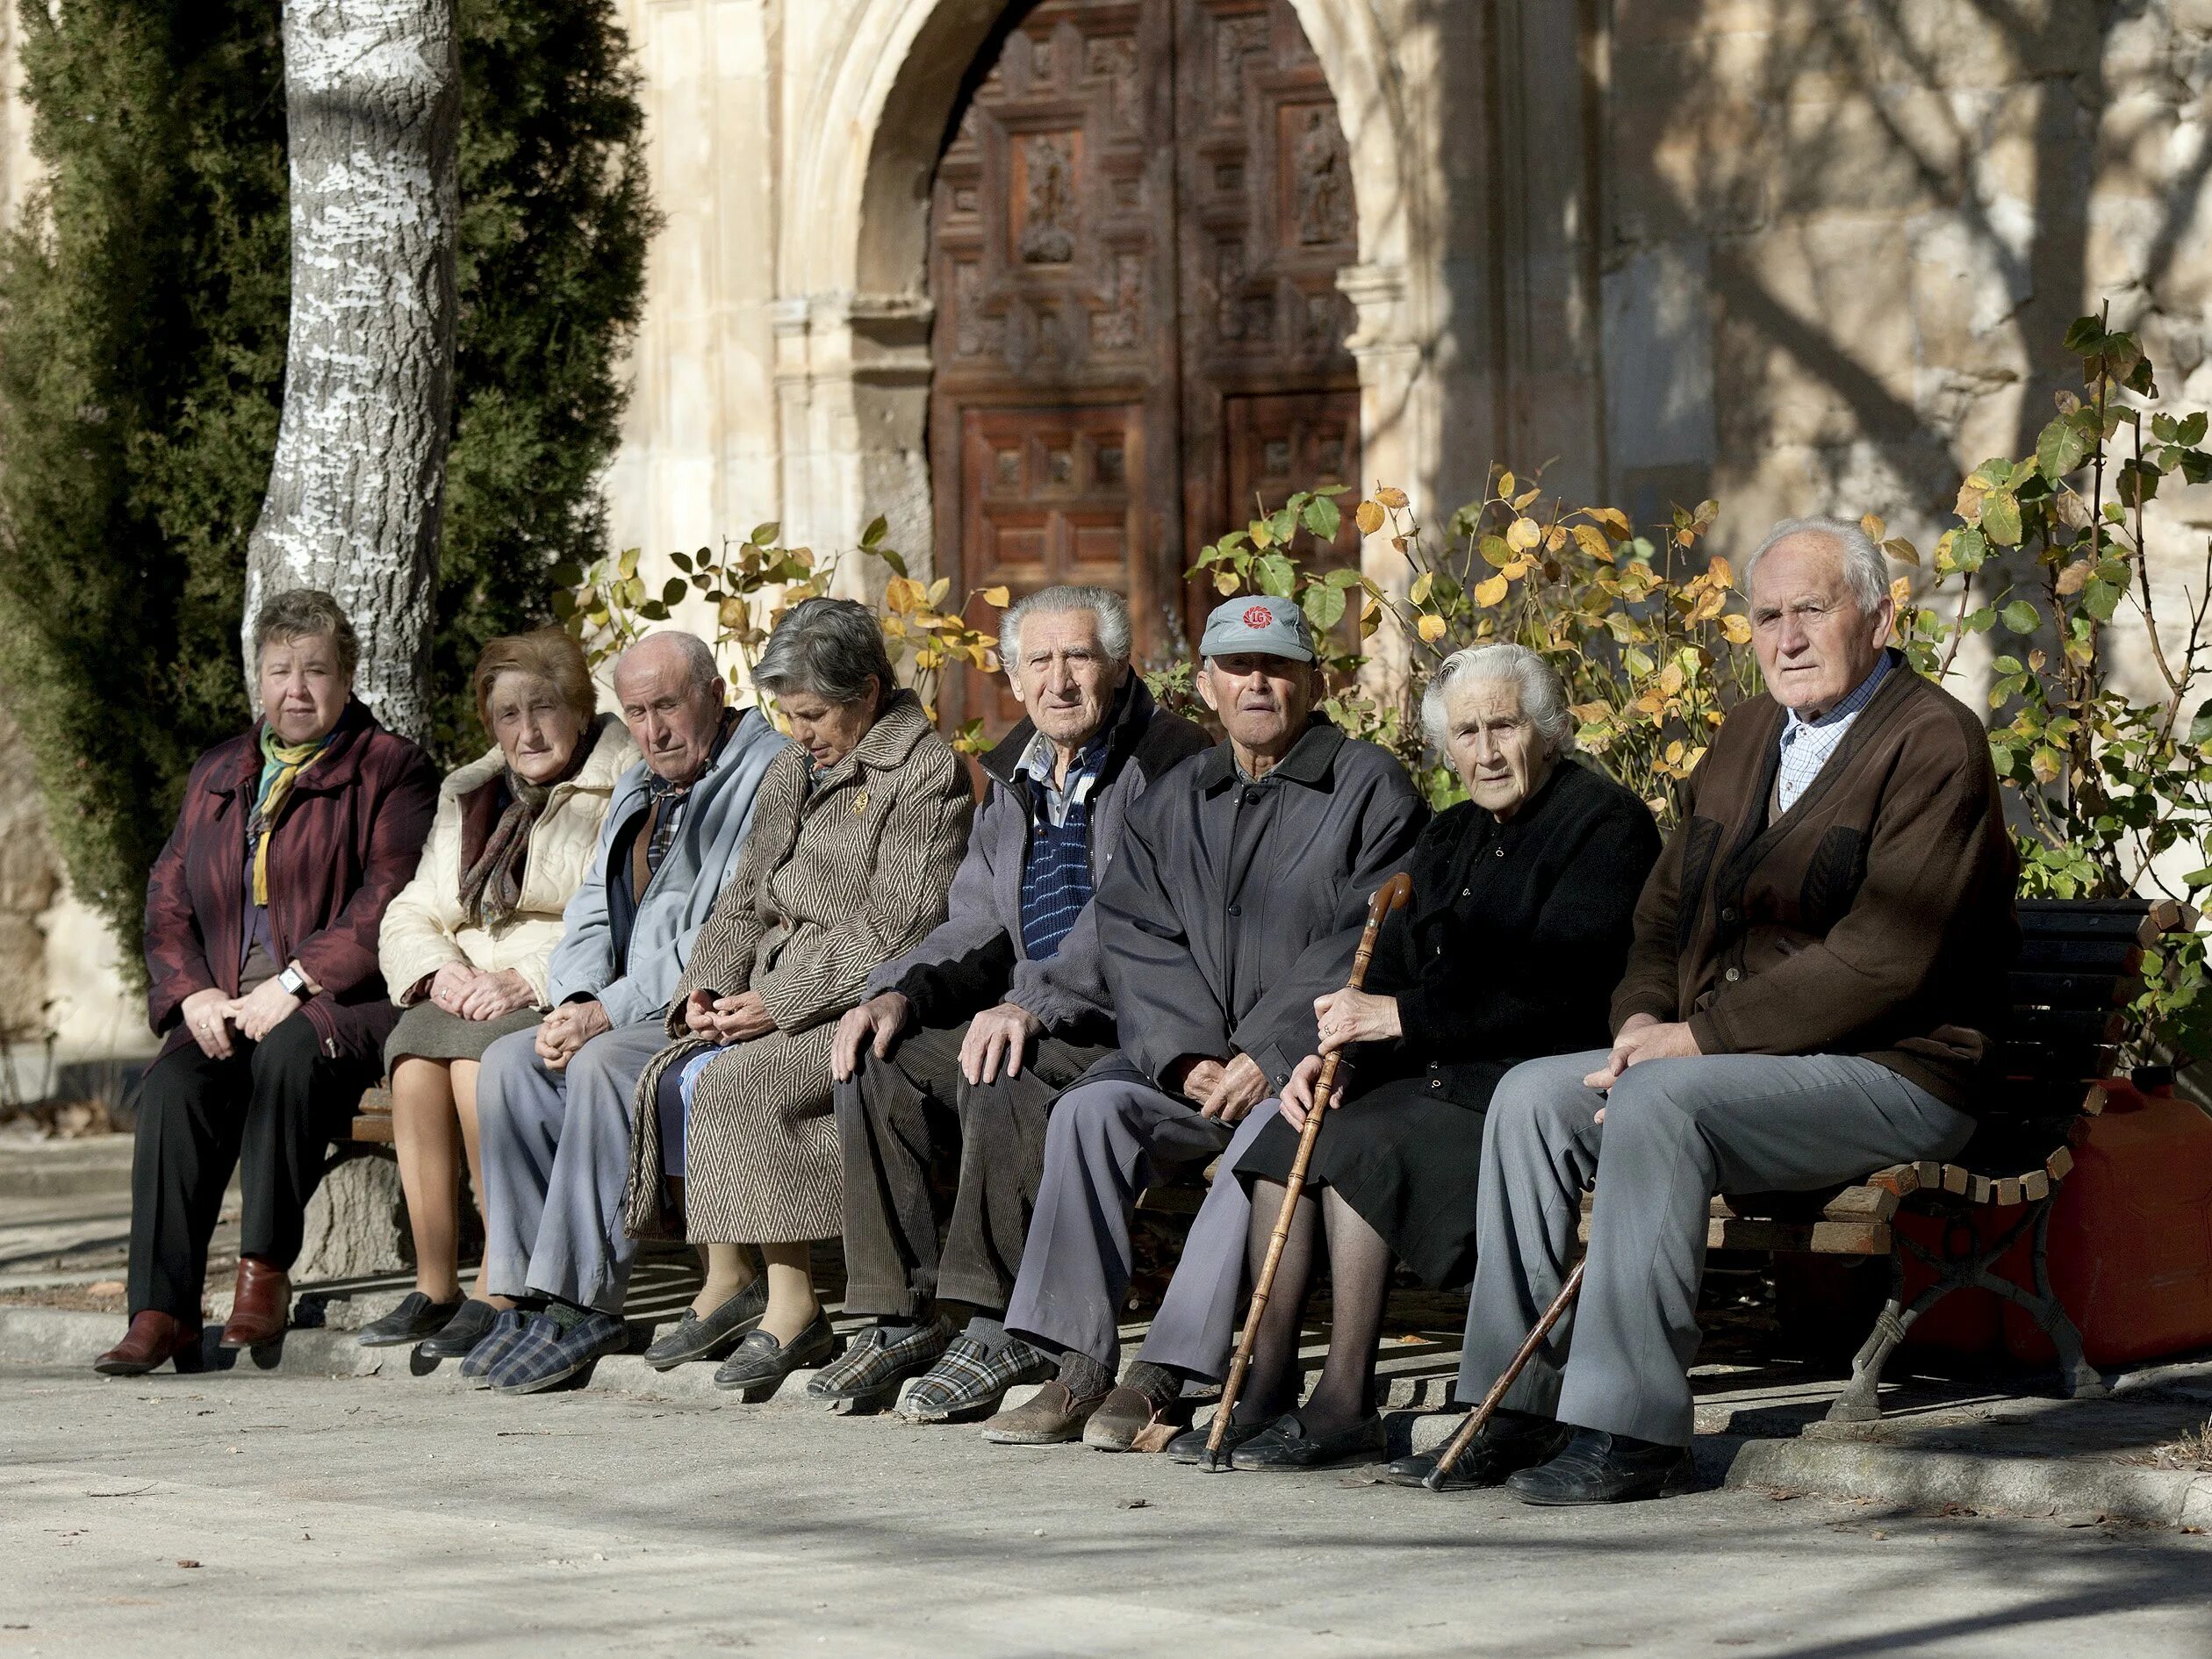 Самое пожилое население. Пенсионес pensiones в Испании. Пенсионеры в Испании. Старение населения. Пенсионеры в Европе.